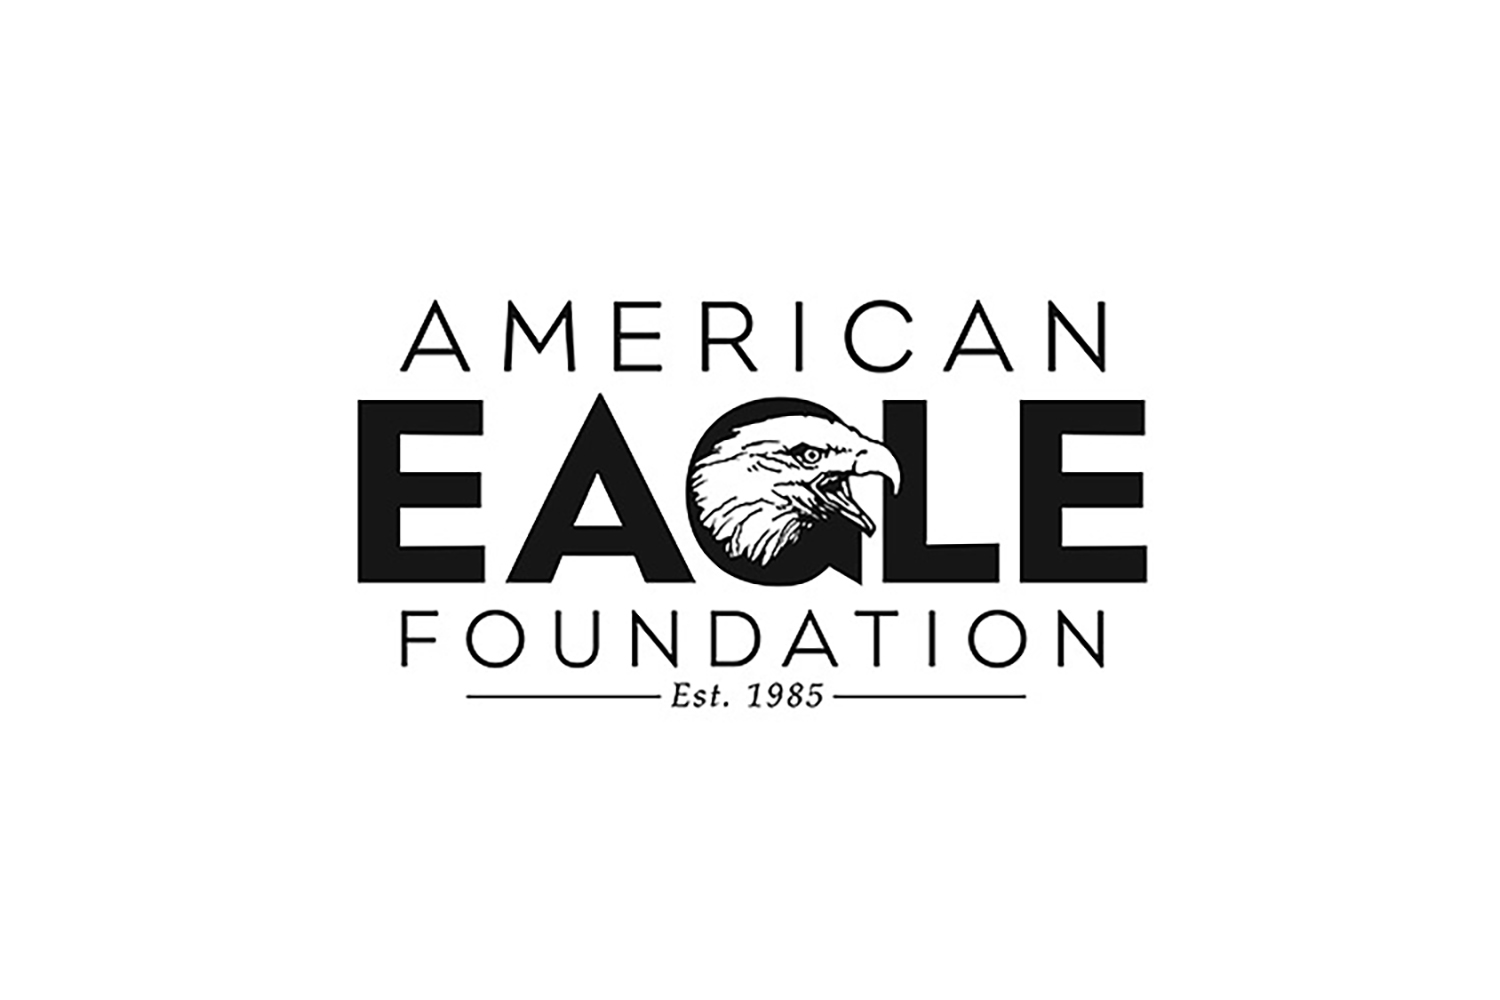 American Eagle Foundation logo